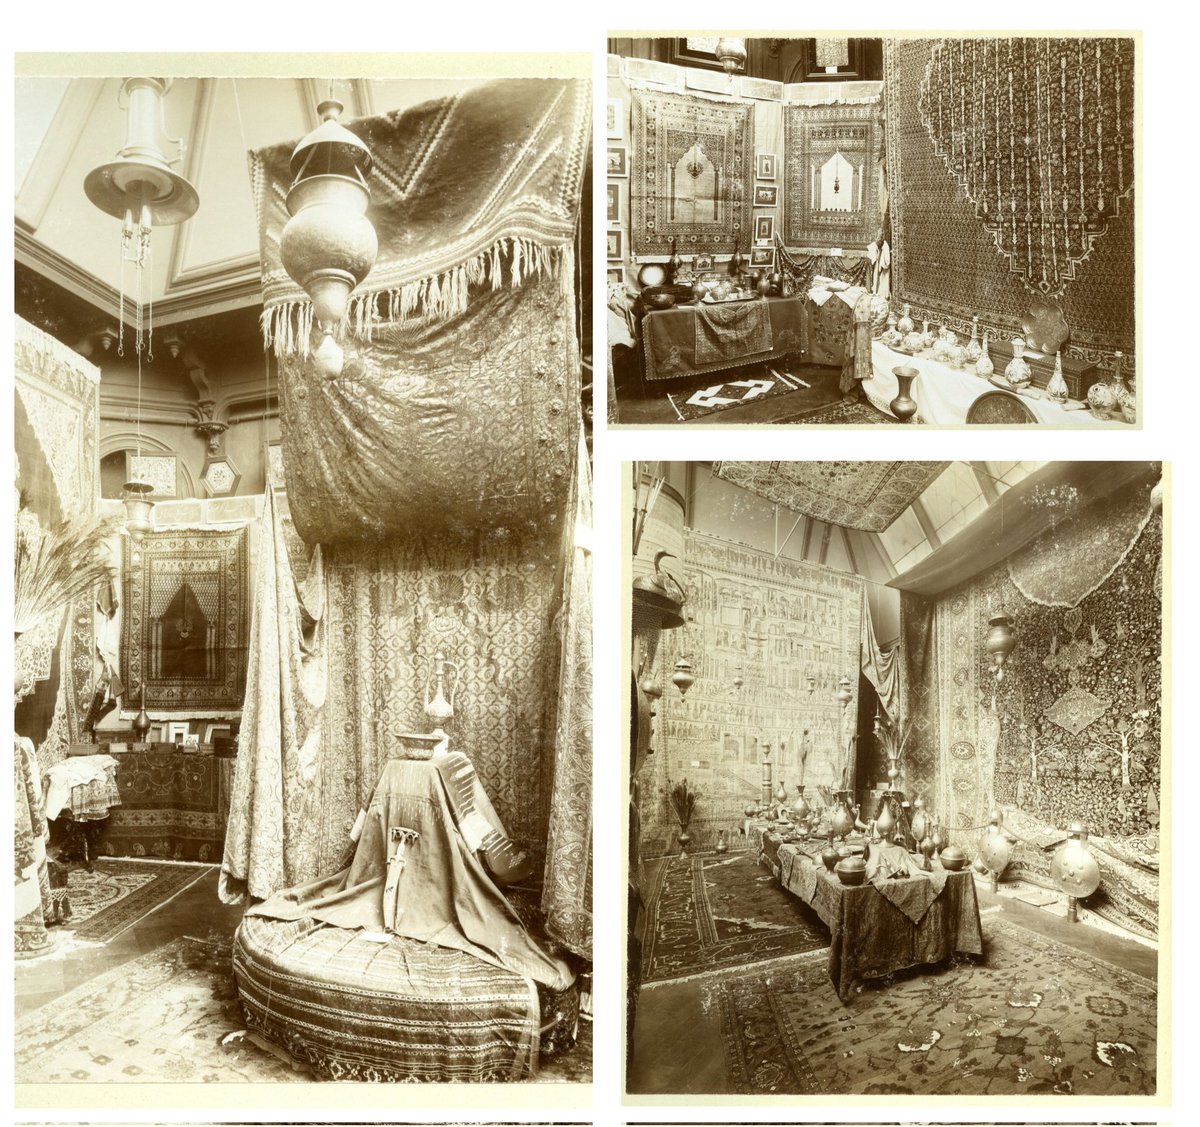 Mei 1903, tentoonstelling  van Perzische kunstnijverheid in de Grand Bazar Royal aan de Zeestraat 82 in Den Haag.
Foto's C.J. de Gilde, collectie @haagsarchief